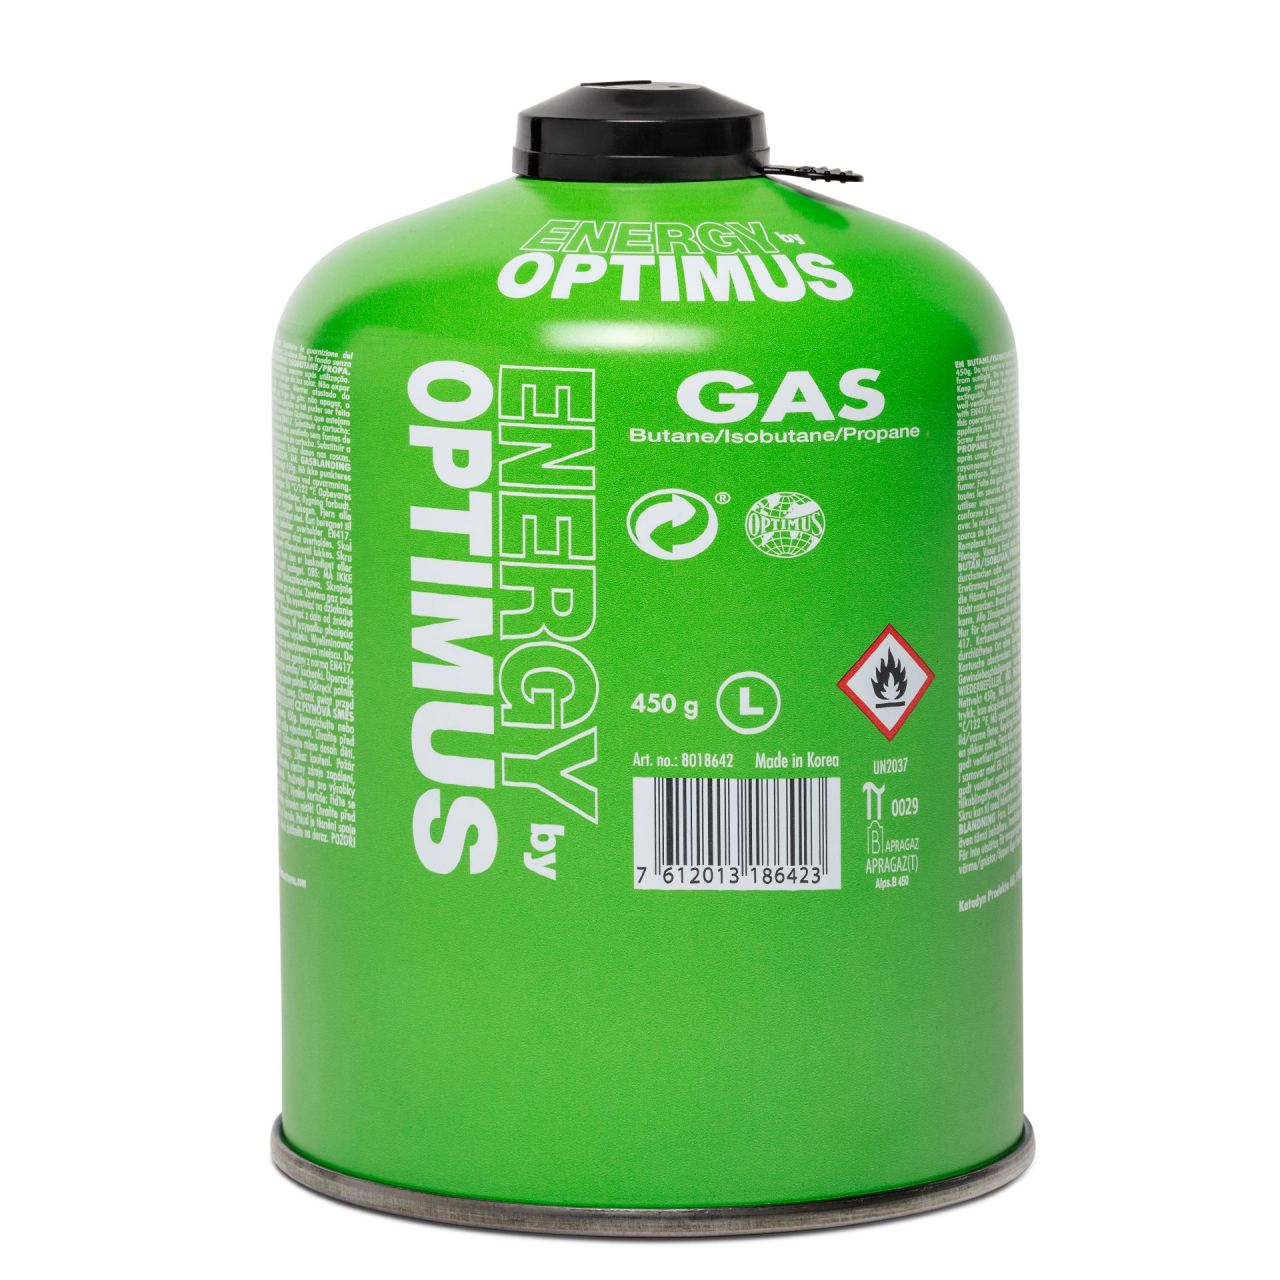 SKOTTI Gasgrill mit 450g OPTIMUS "green" Gaskartusche und Tasche